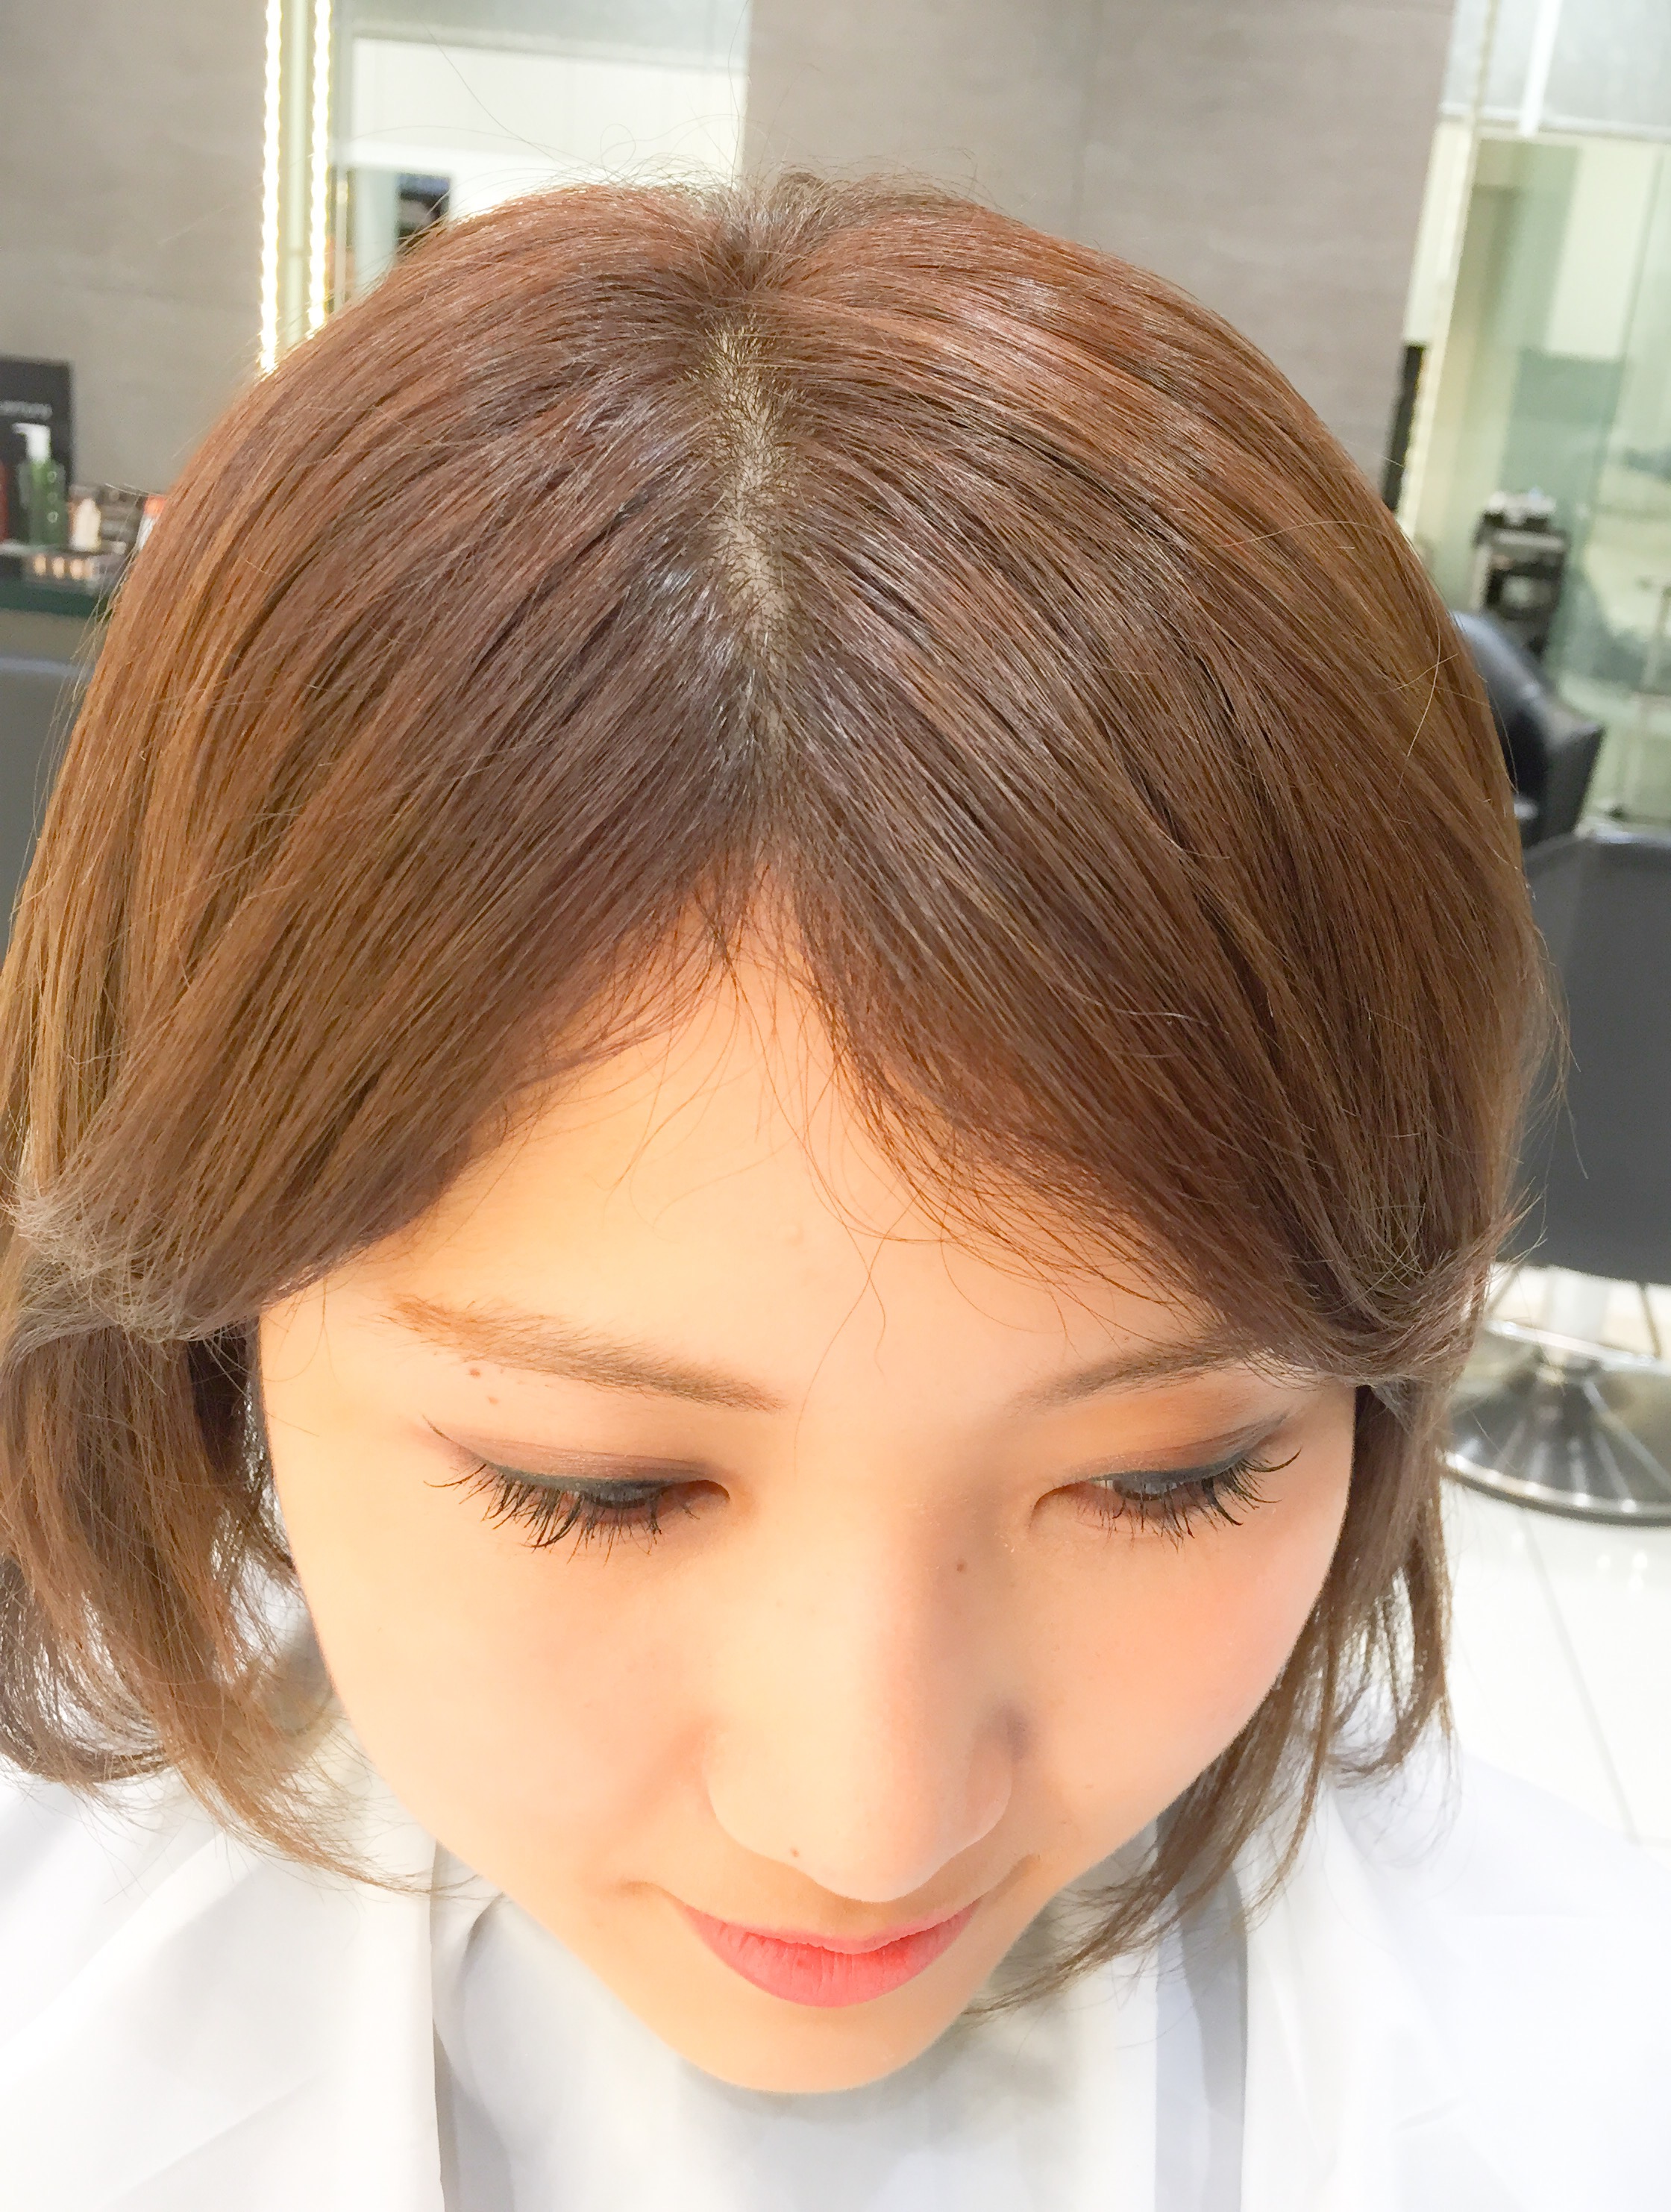 How To パックリ割れない前髪を作る たった2つの方法 Za Za Aoyama 美容院 美容室 ヘアサロンならza Za ザザ